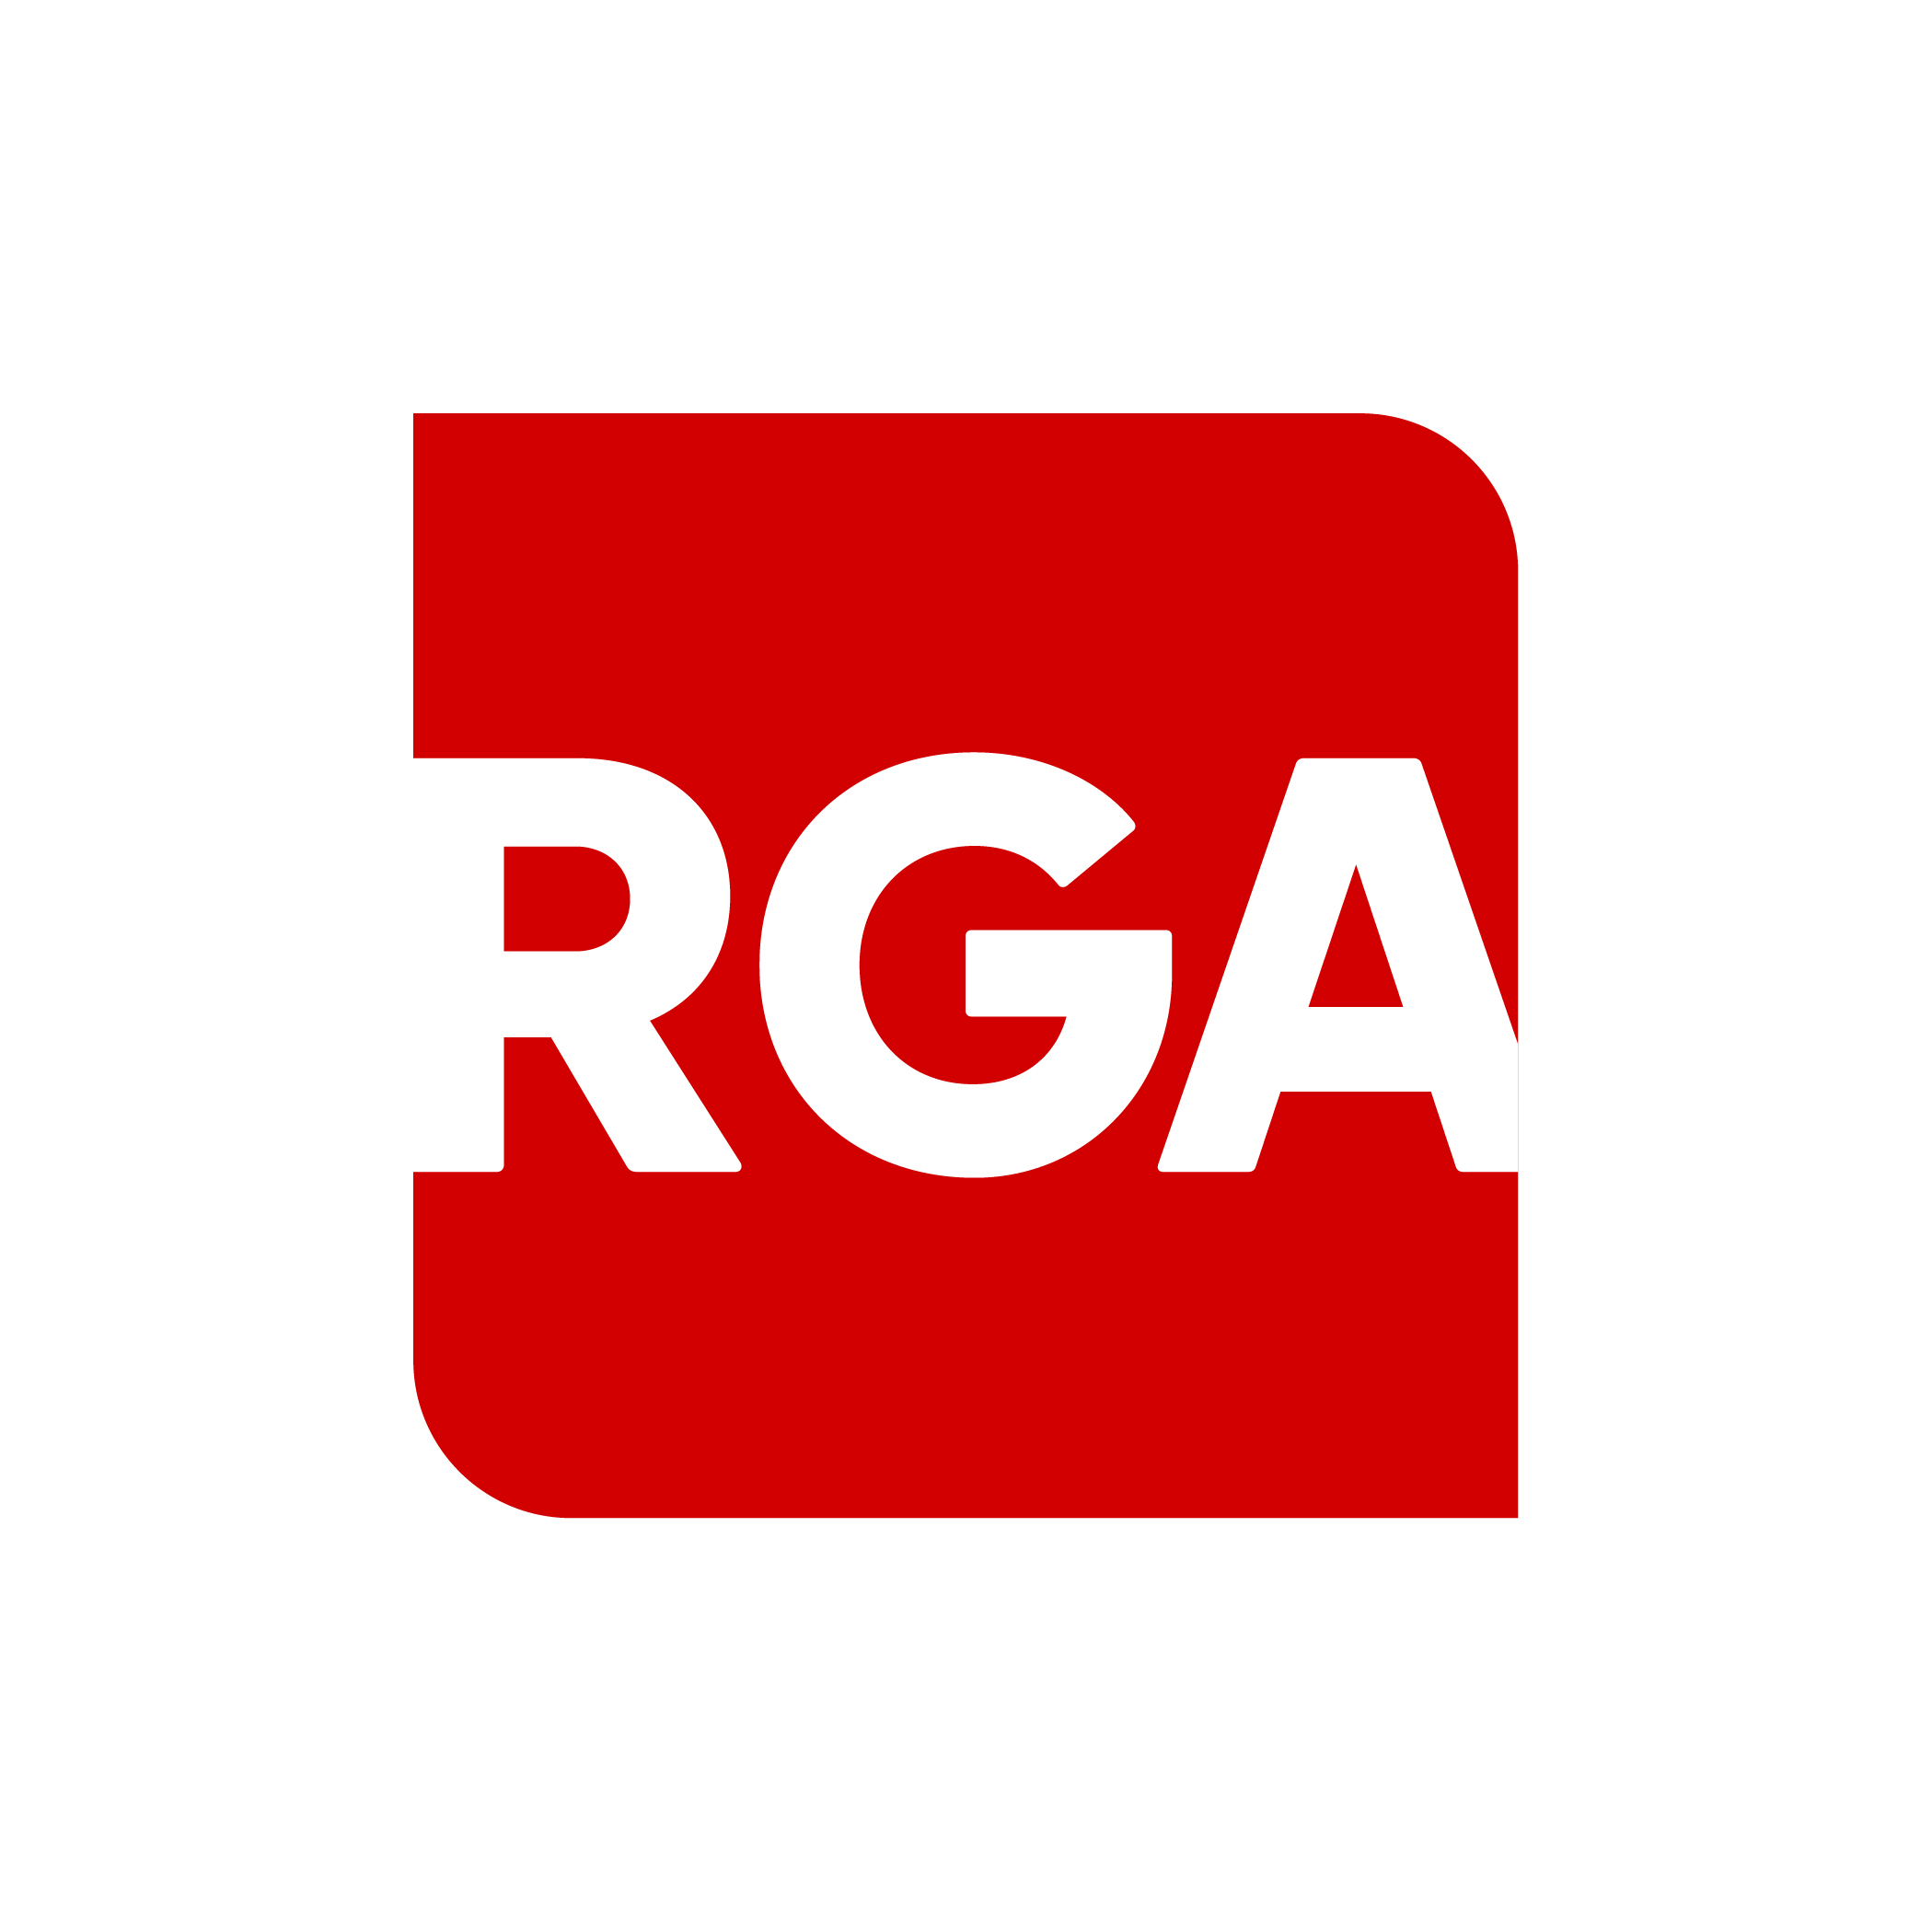 rga_logo_rgb_red_wht.jpg